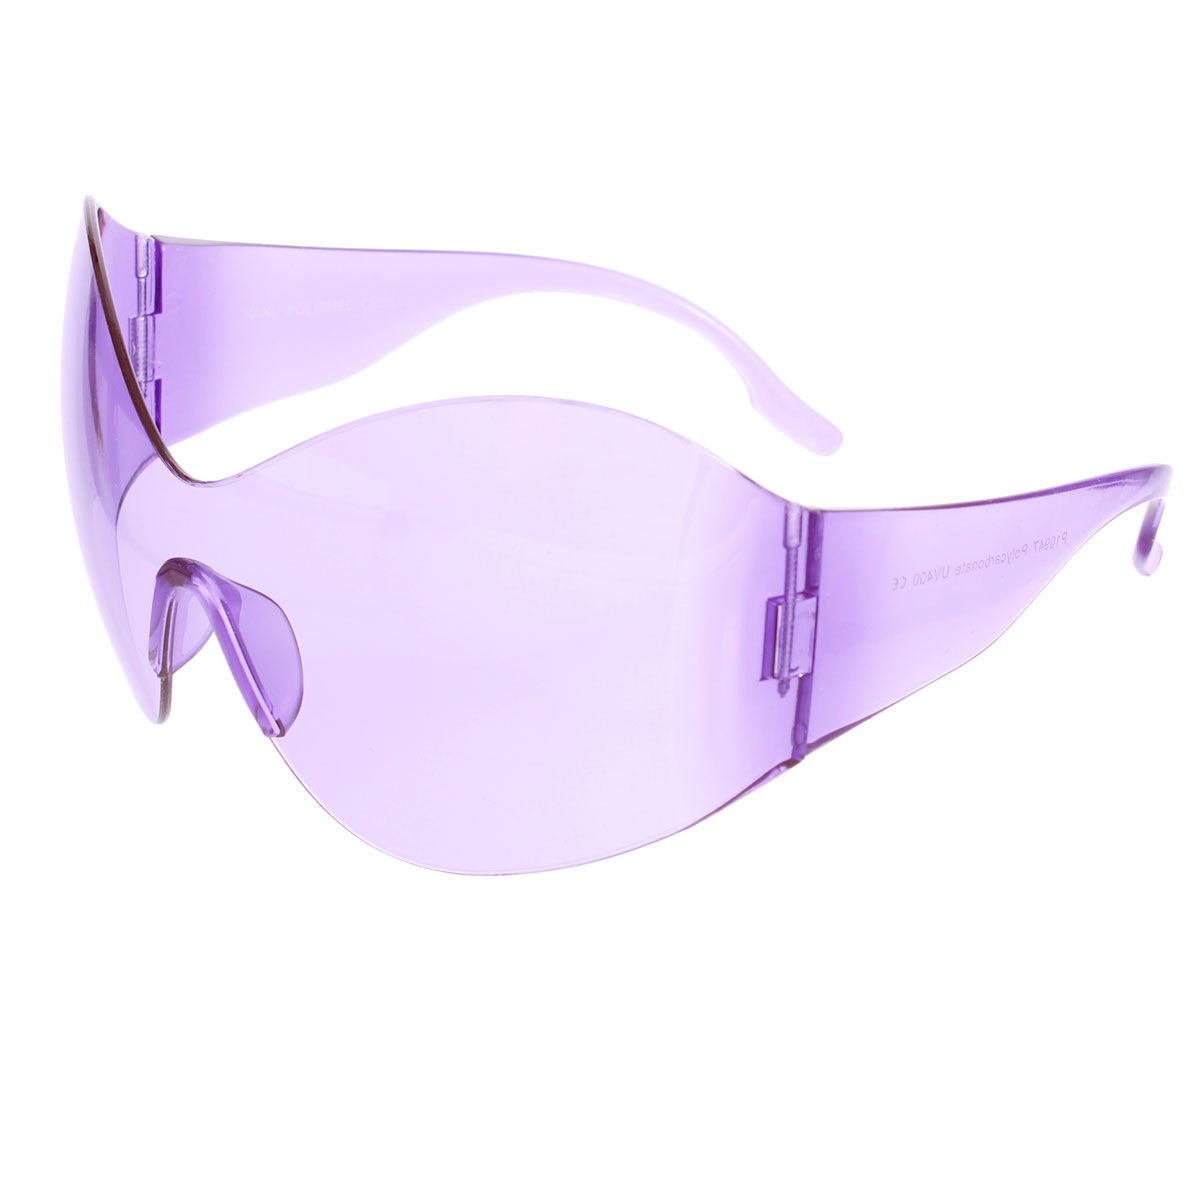 Sunglasses Butterfly Mask Purple Eyewear for Women - Bae Apparel